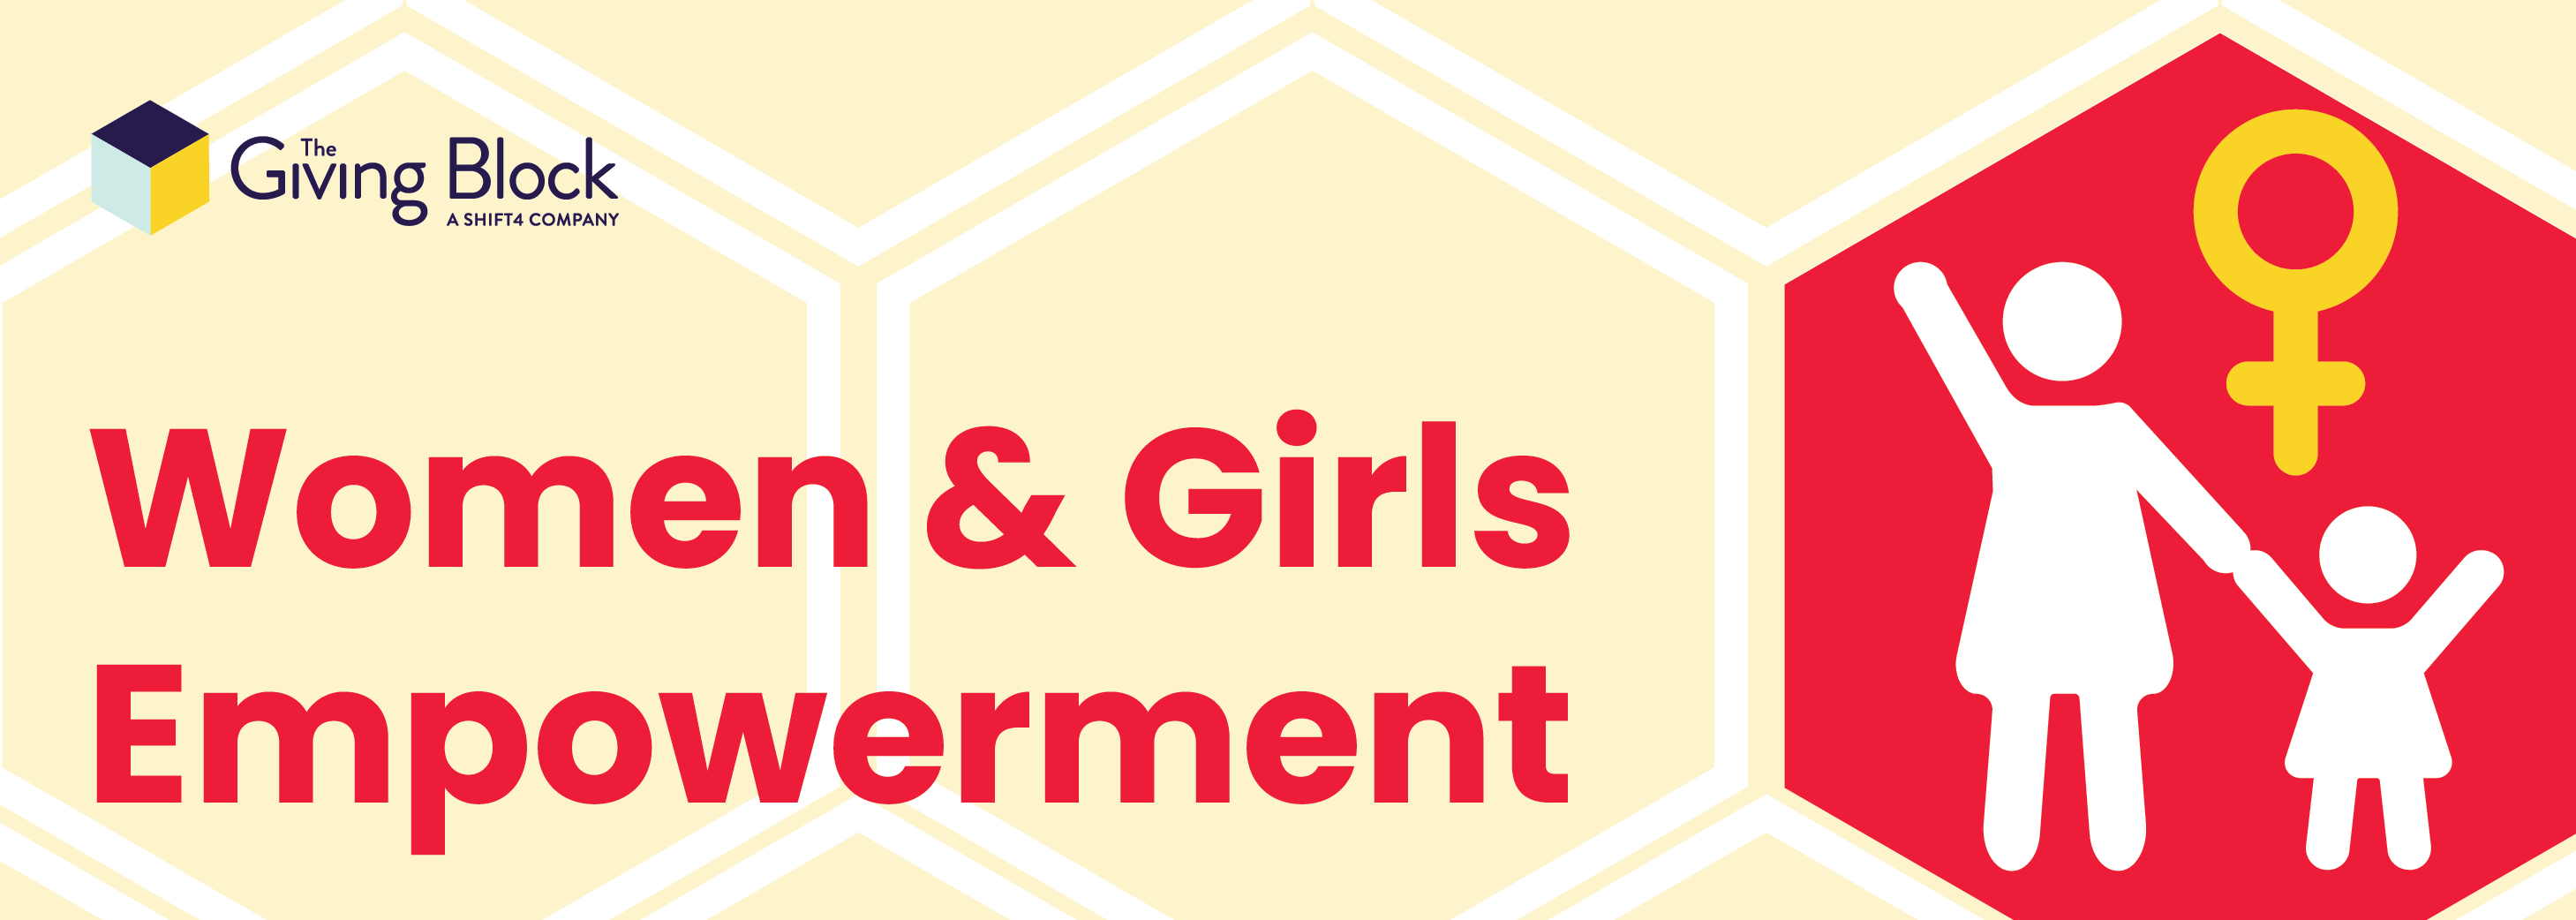 Header - Women Girls Empowerment | The Giving Block